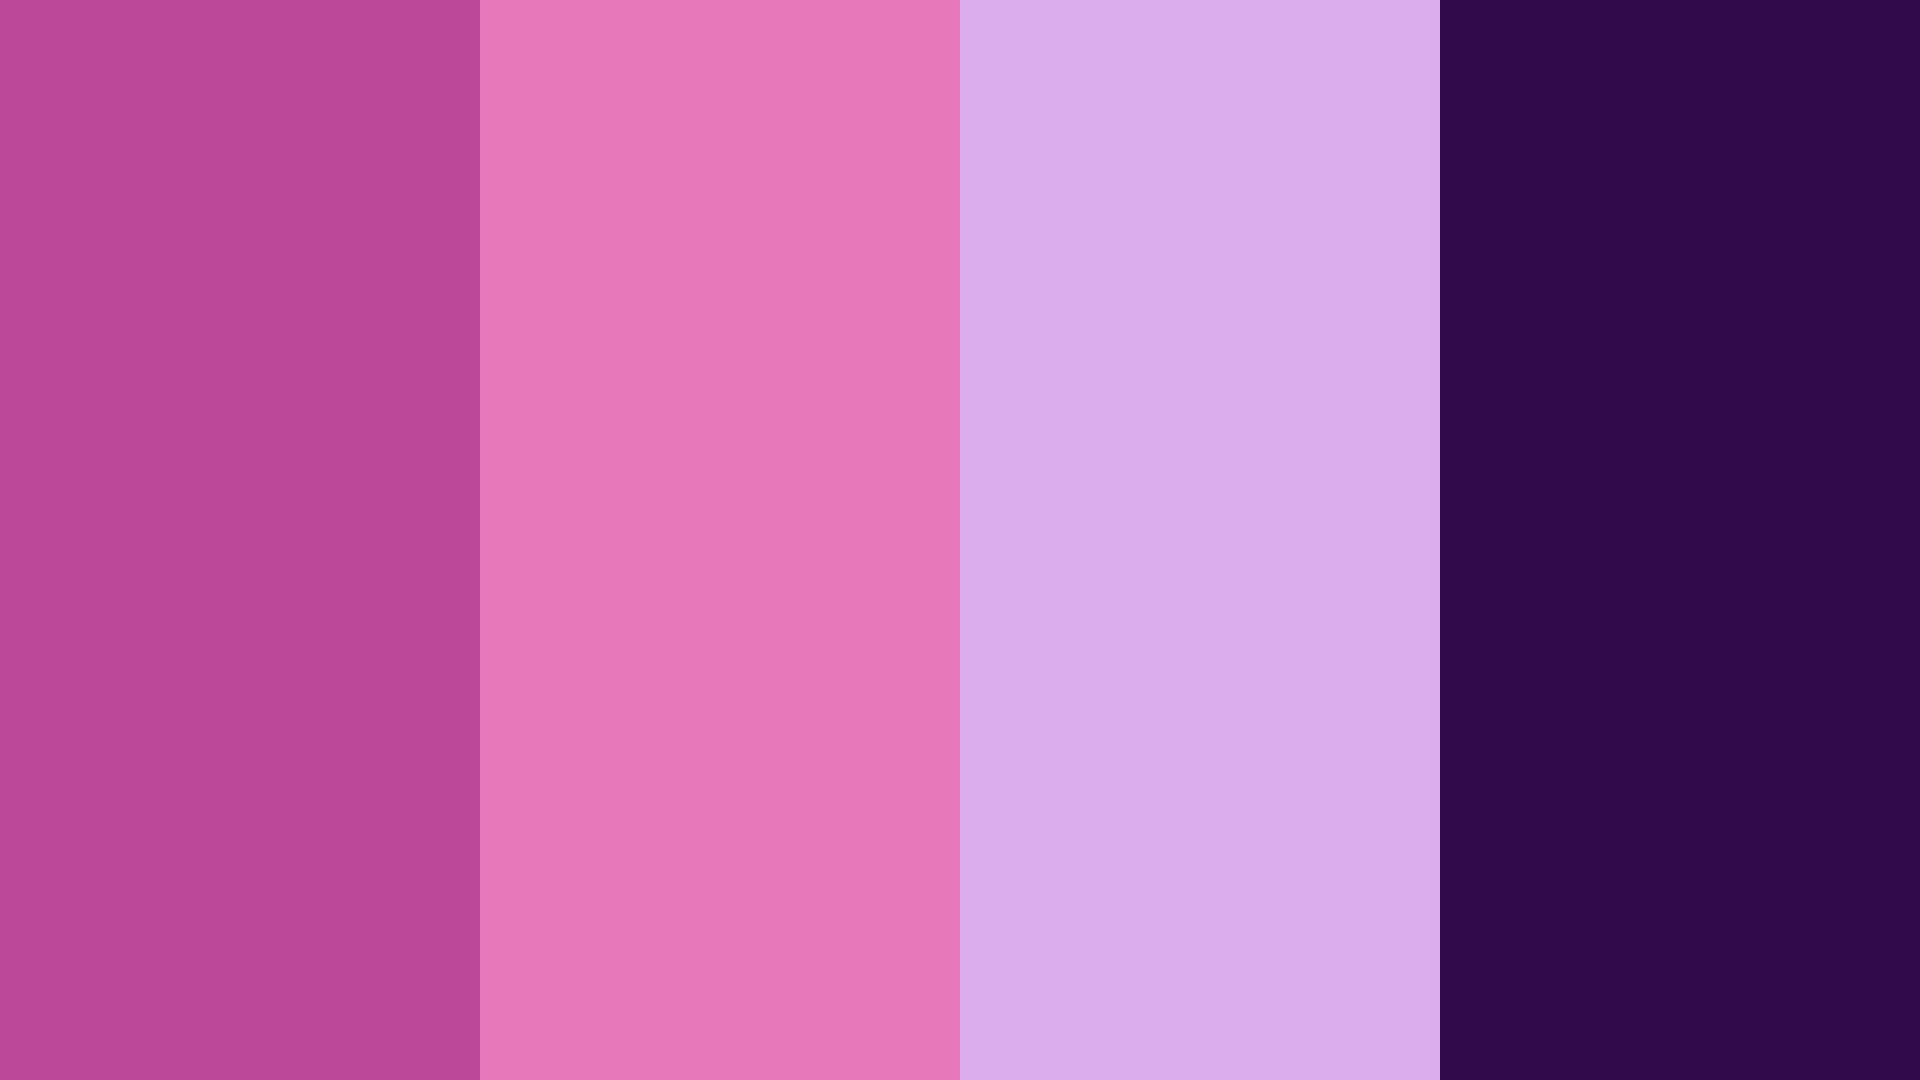 Pinkviolett Farbpalette Wallpaper